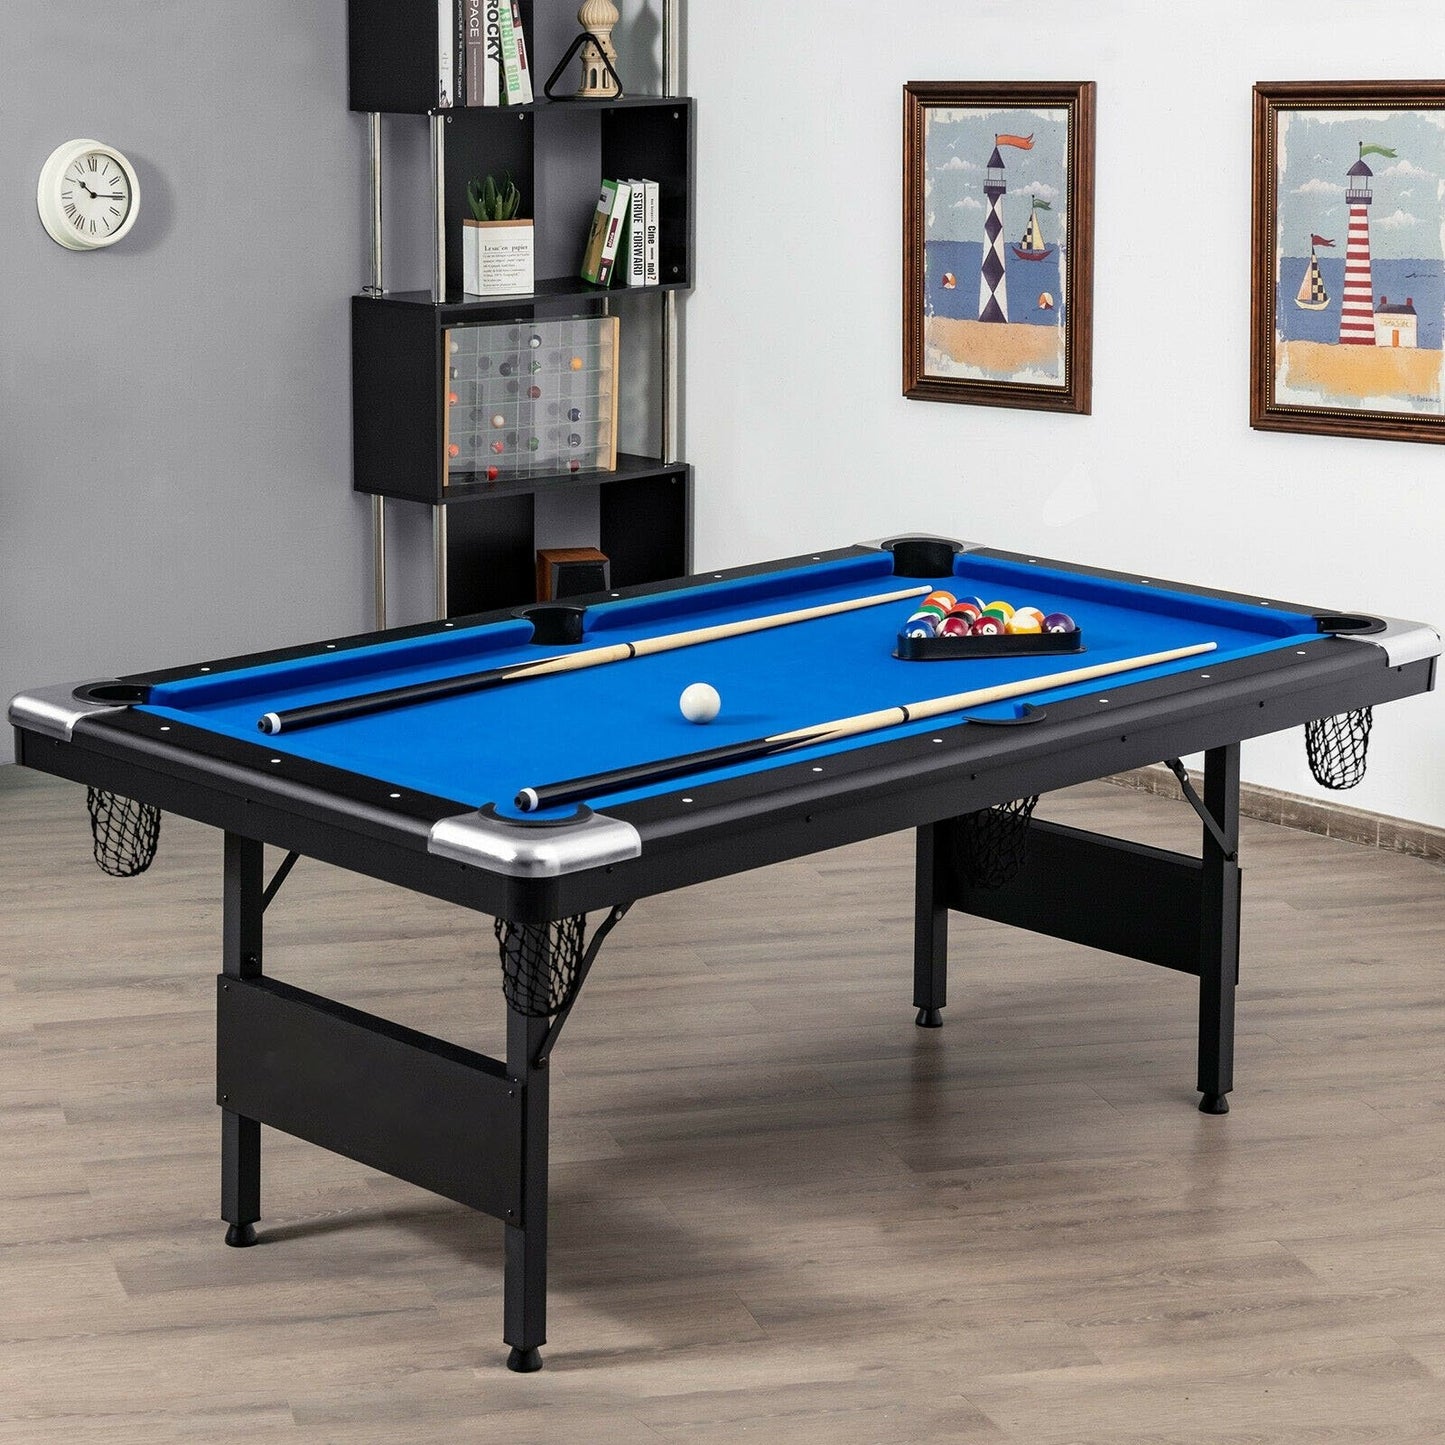 6 Feet Foldable Billiard Pool Table, Blue